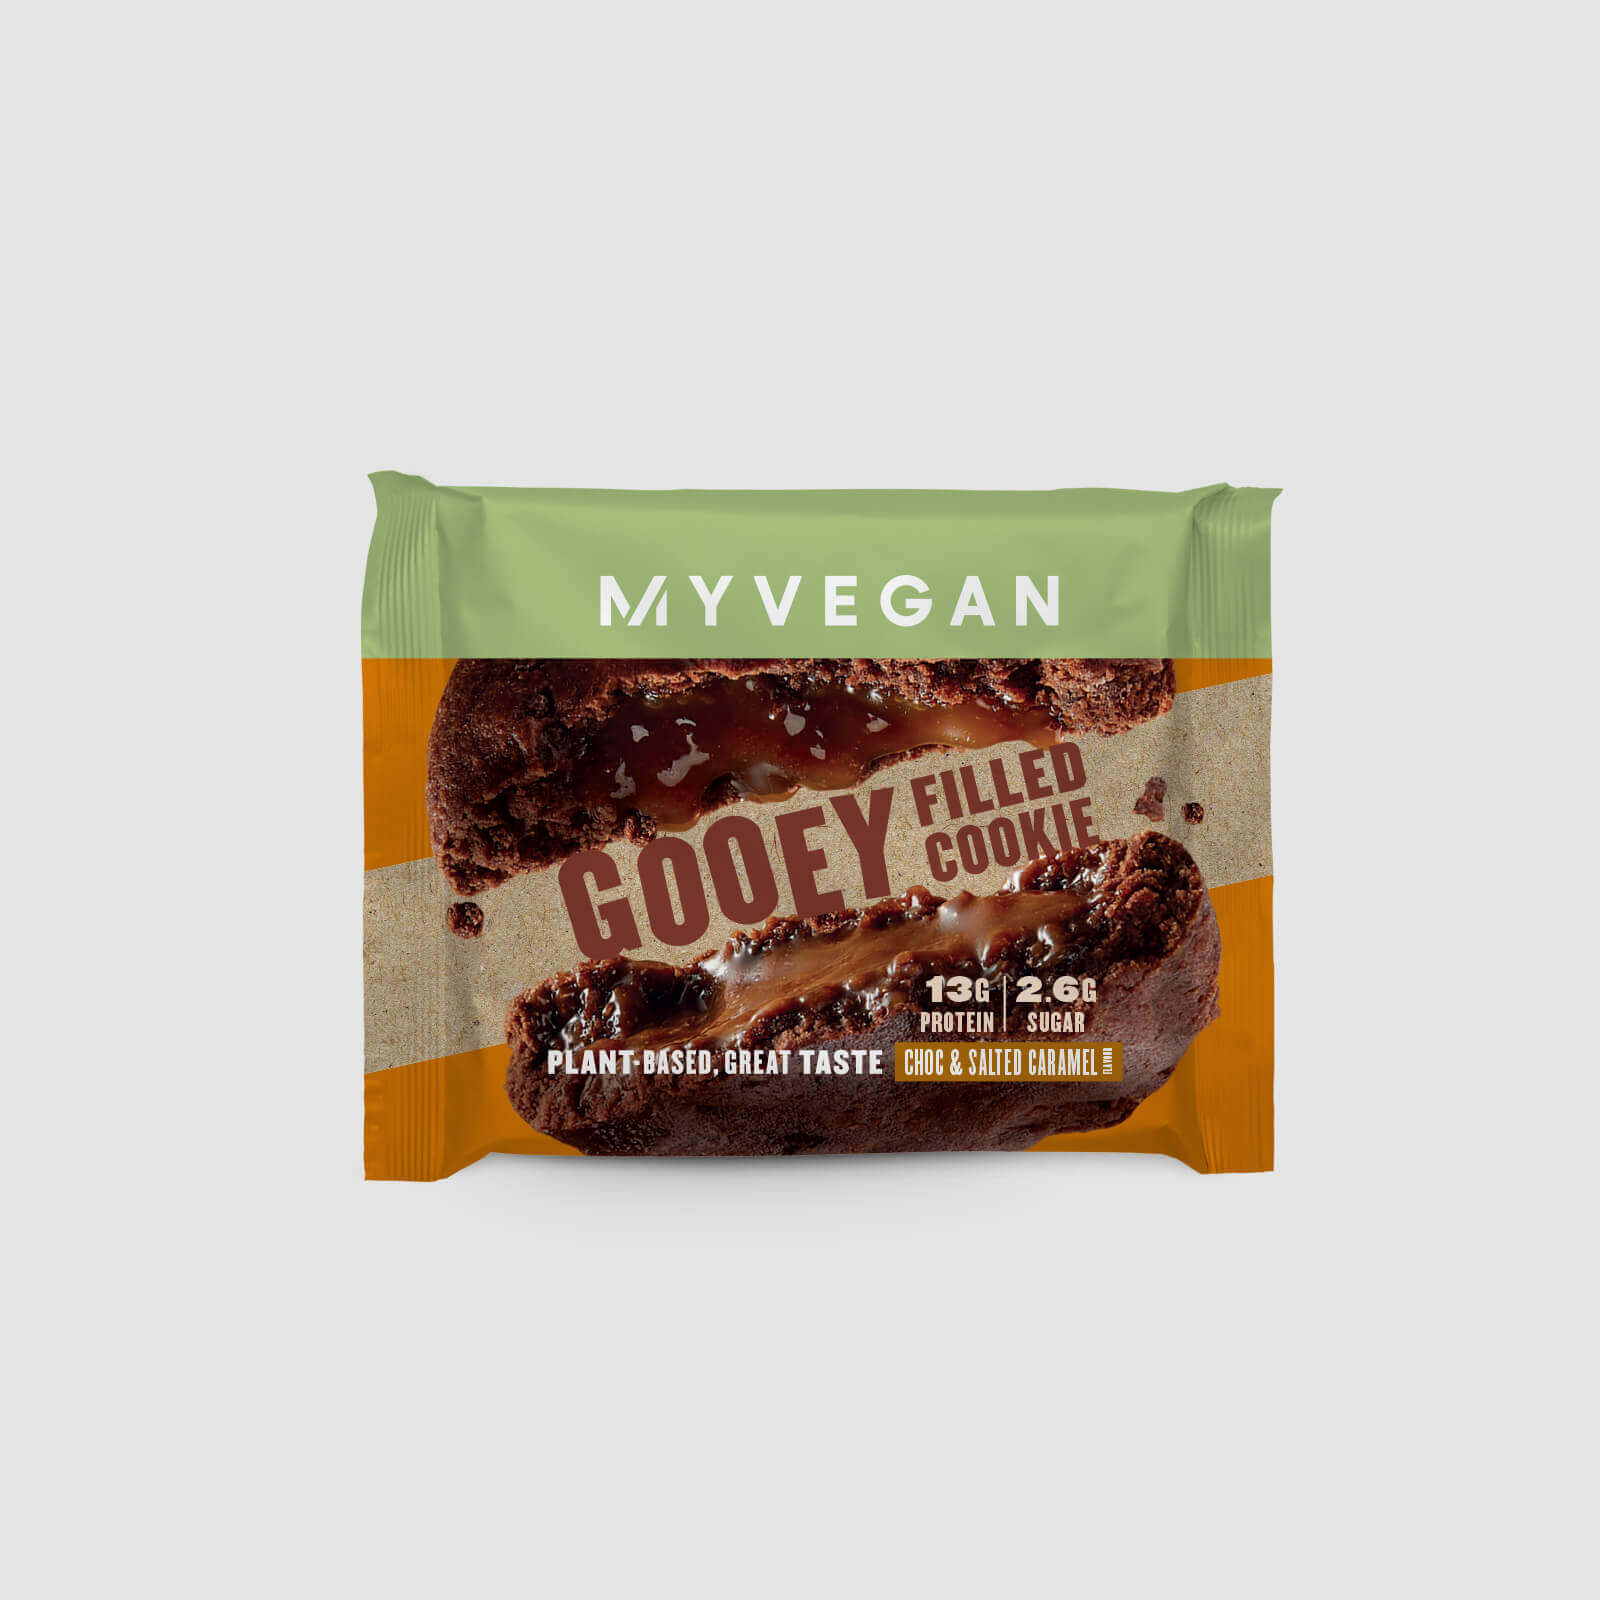 Myprotein Vegan Gooey Filled Cookie (Sample) - Choc & Salted Caramel